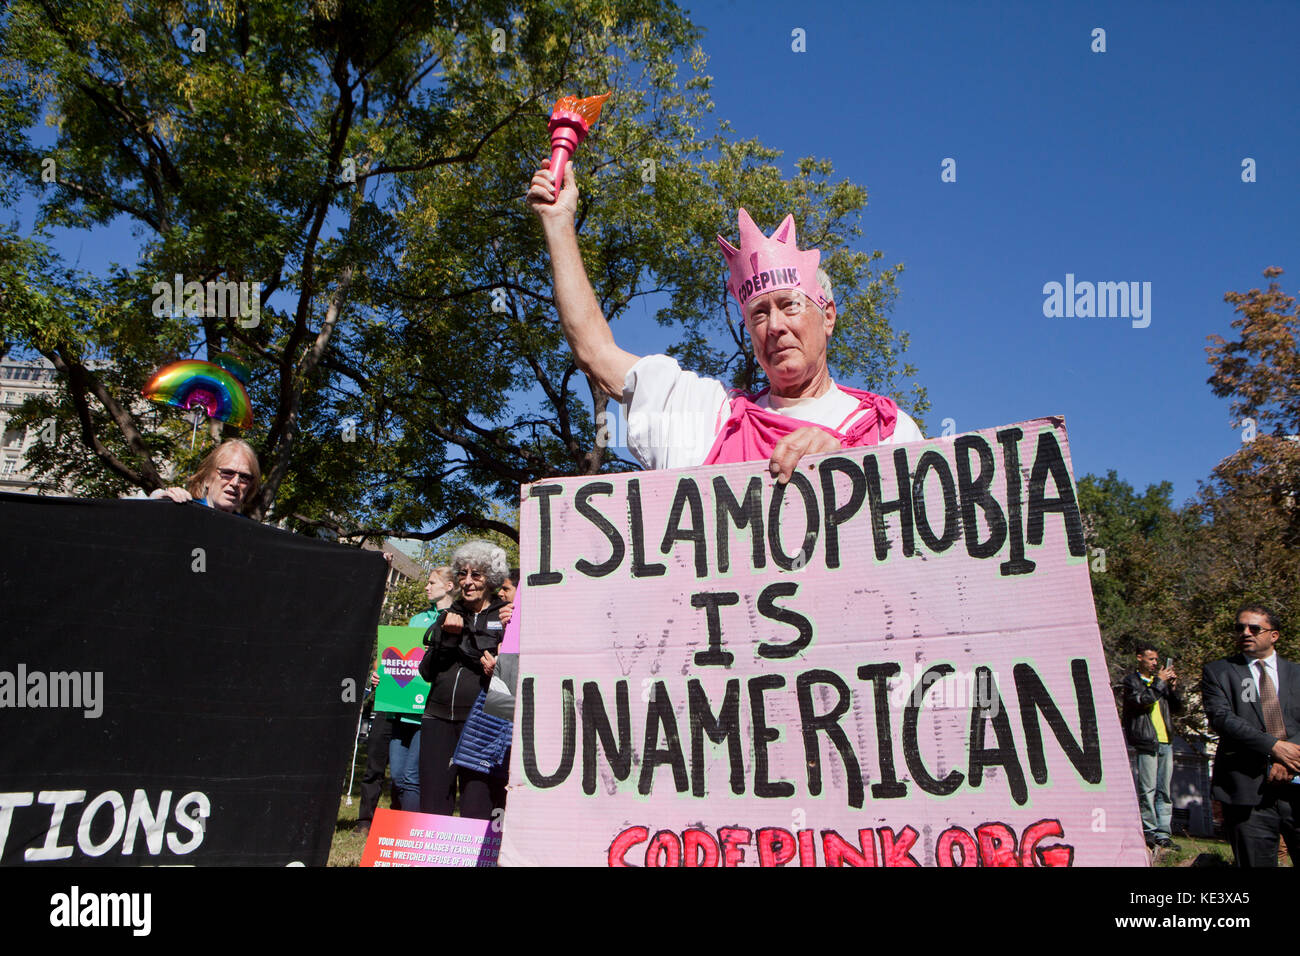 Le mercredi, Octobre 18, 2017, Washington, DC USA : des centaines de Musulmans américains et partisans de protester contre les tentatives de l'administration d'atout d'interdiction "musulman" à Lafayette Square, juste à l'extérieur de la Maison Blanche. Credit : B Christopher/Alamy Live News Banque D'Images